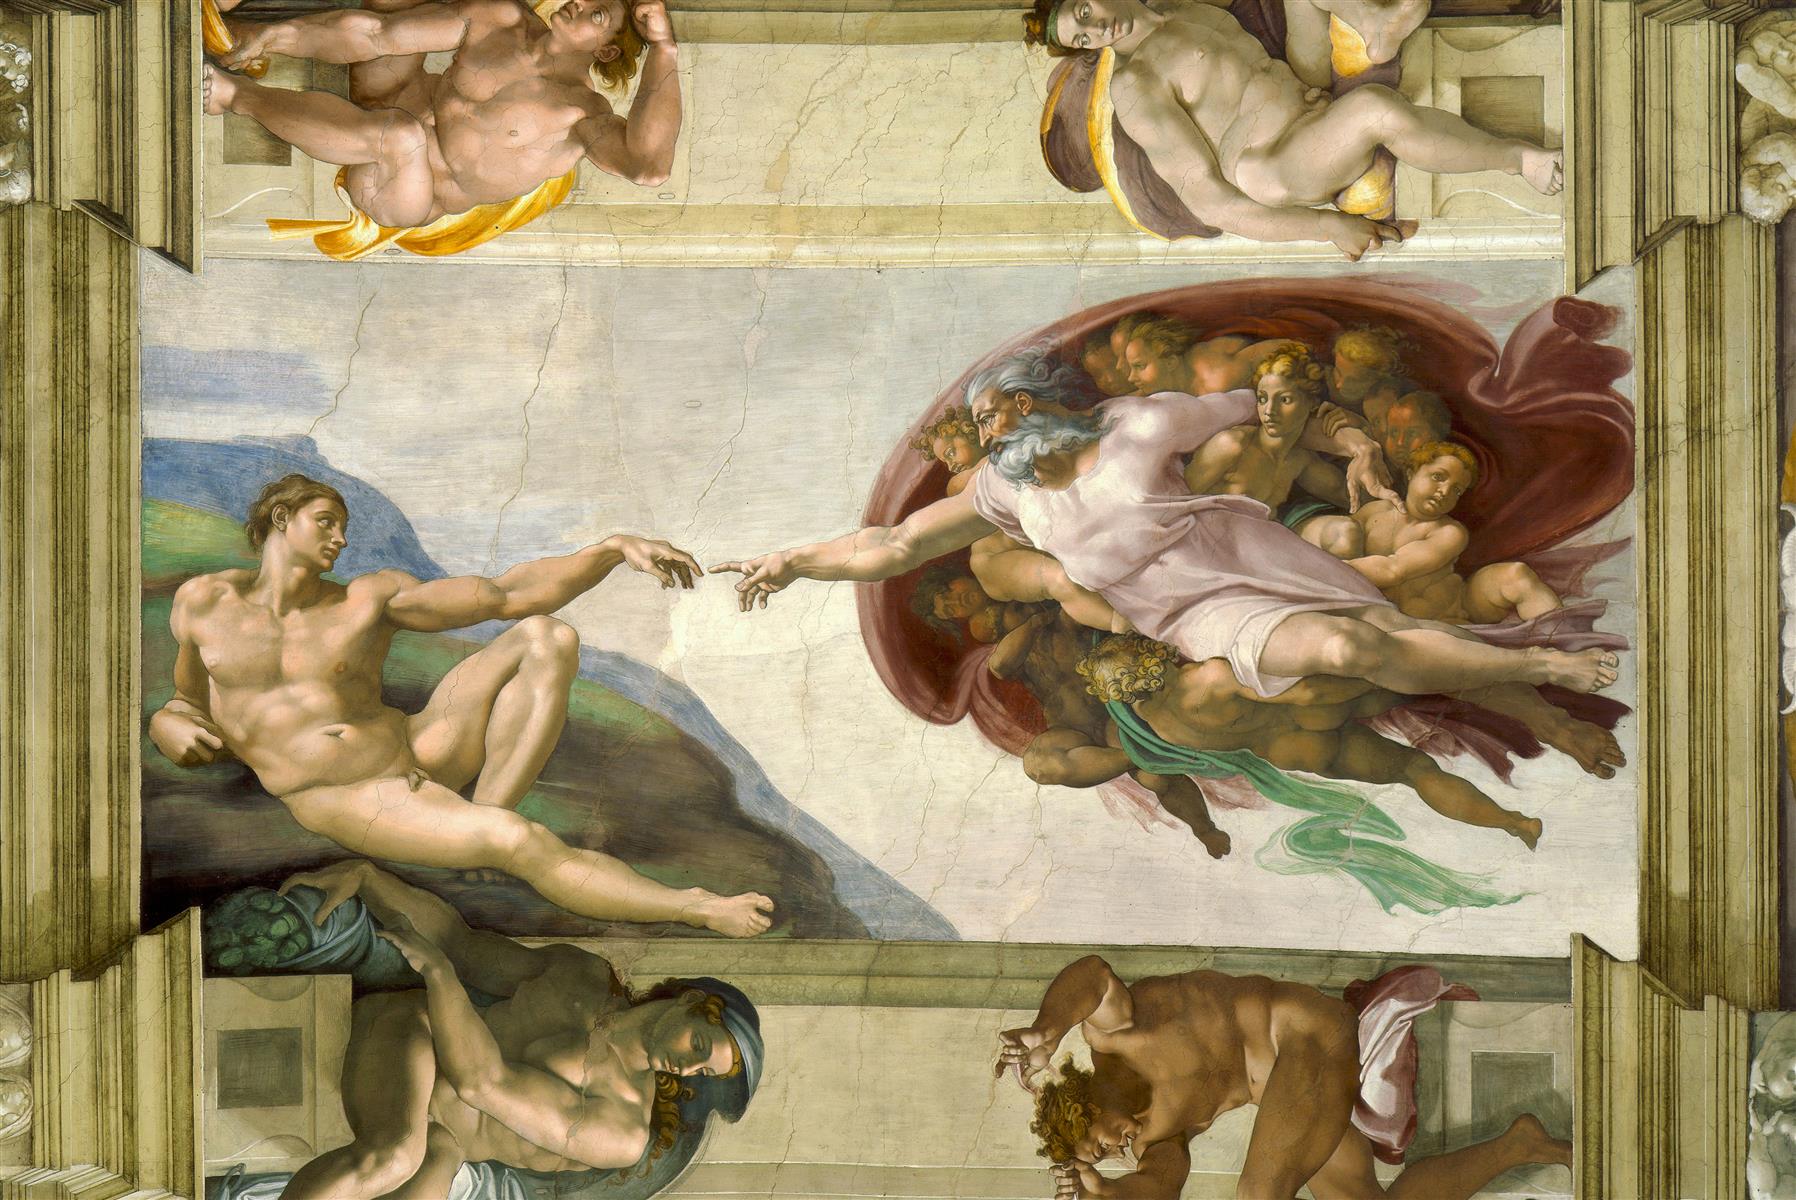 كنيسة سيستين سقف: خلق آدم - Sistine Chapel Ceiling: Creation of Adam - مقهى جرير الثقافي